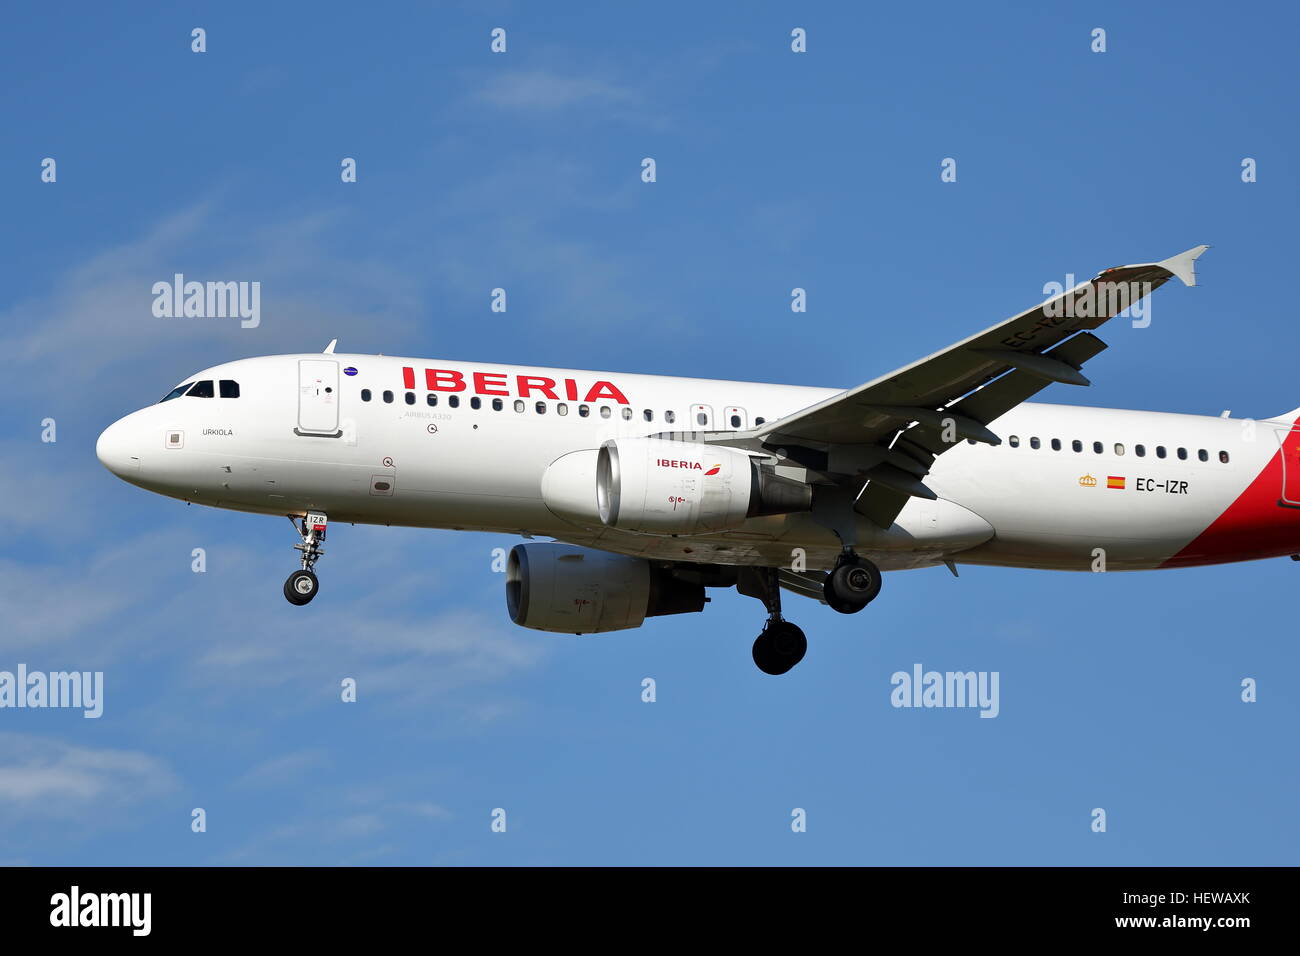 Iberia Airlines Airbus A320-214 EC-IZR landing at Heathrow Stock Photo